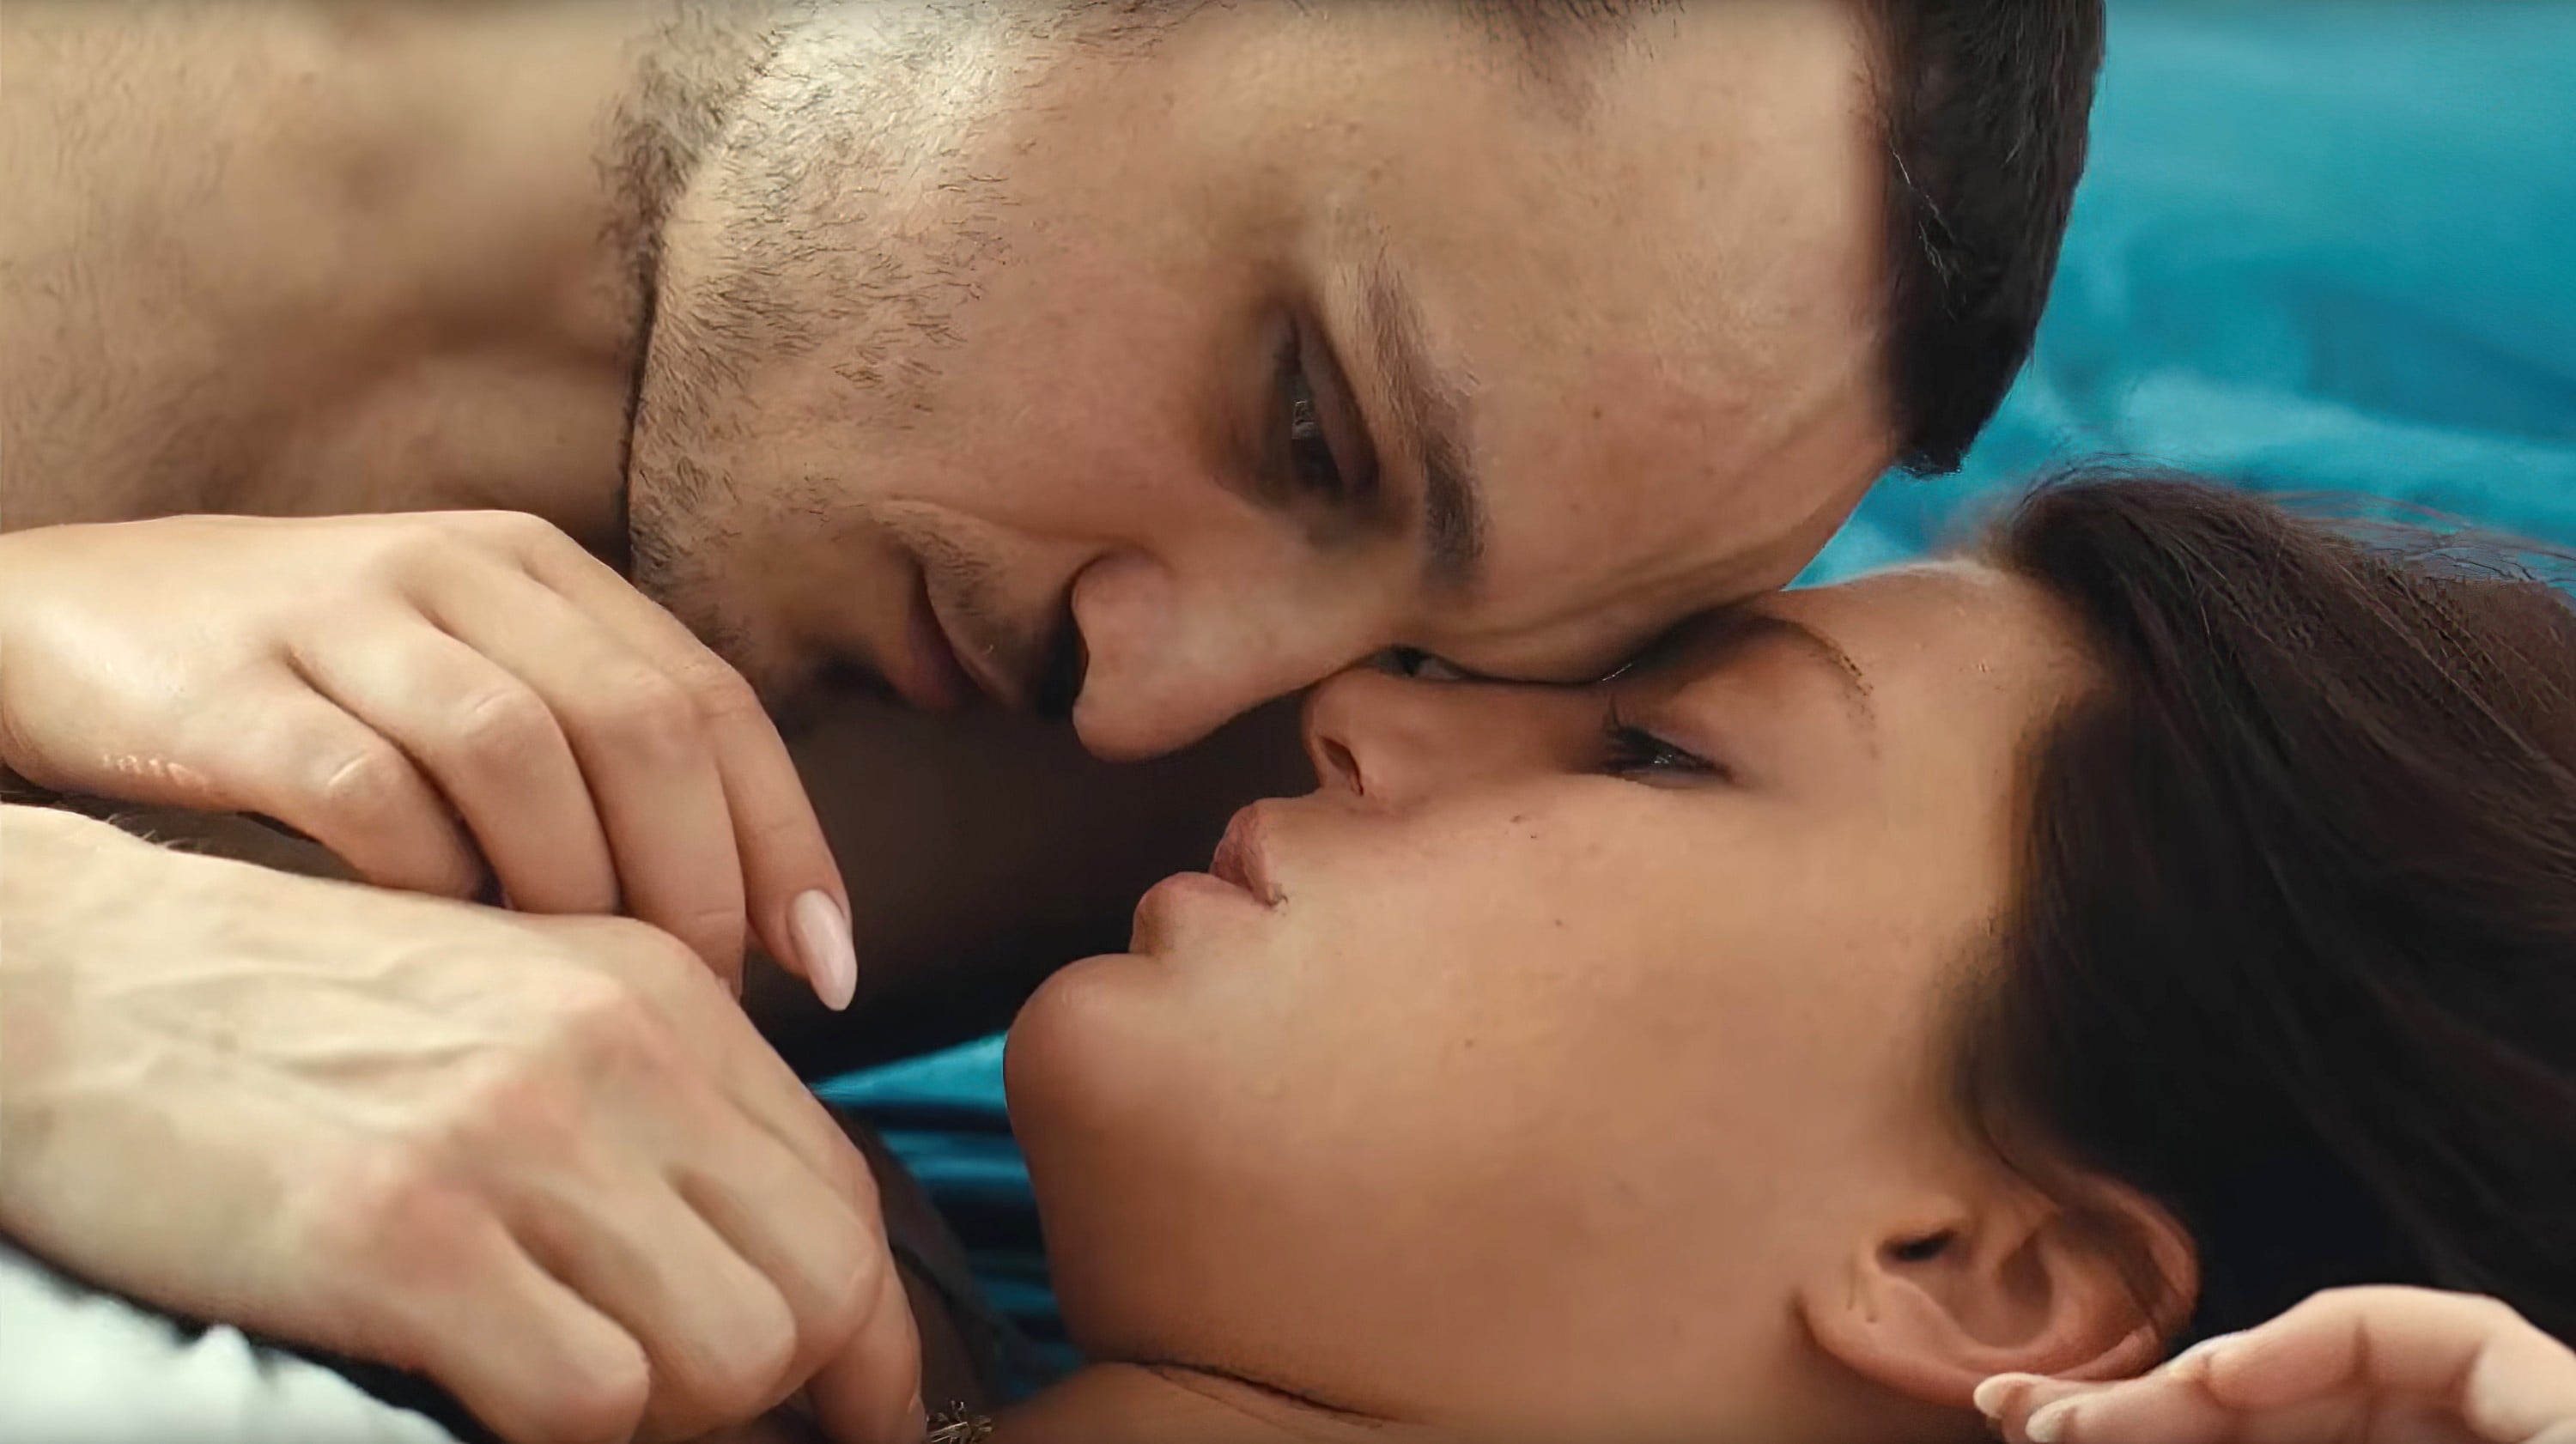 Download Blue Firm - Best NC-17 Movies to Watch | POPSUGAR Love & Sex